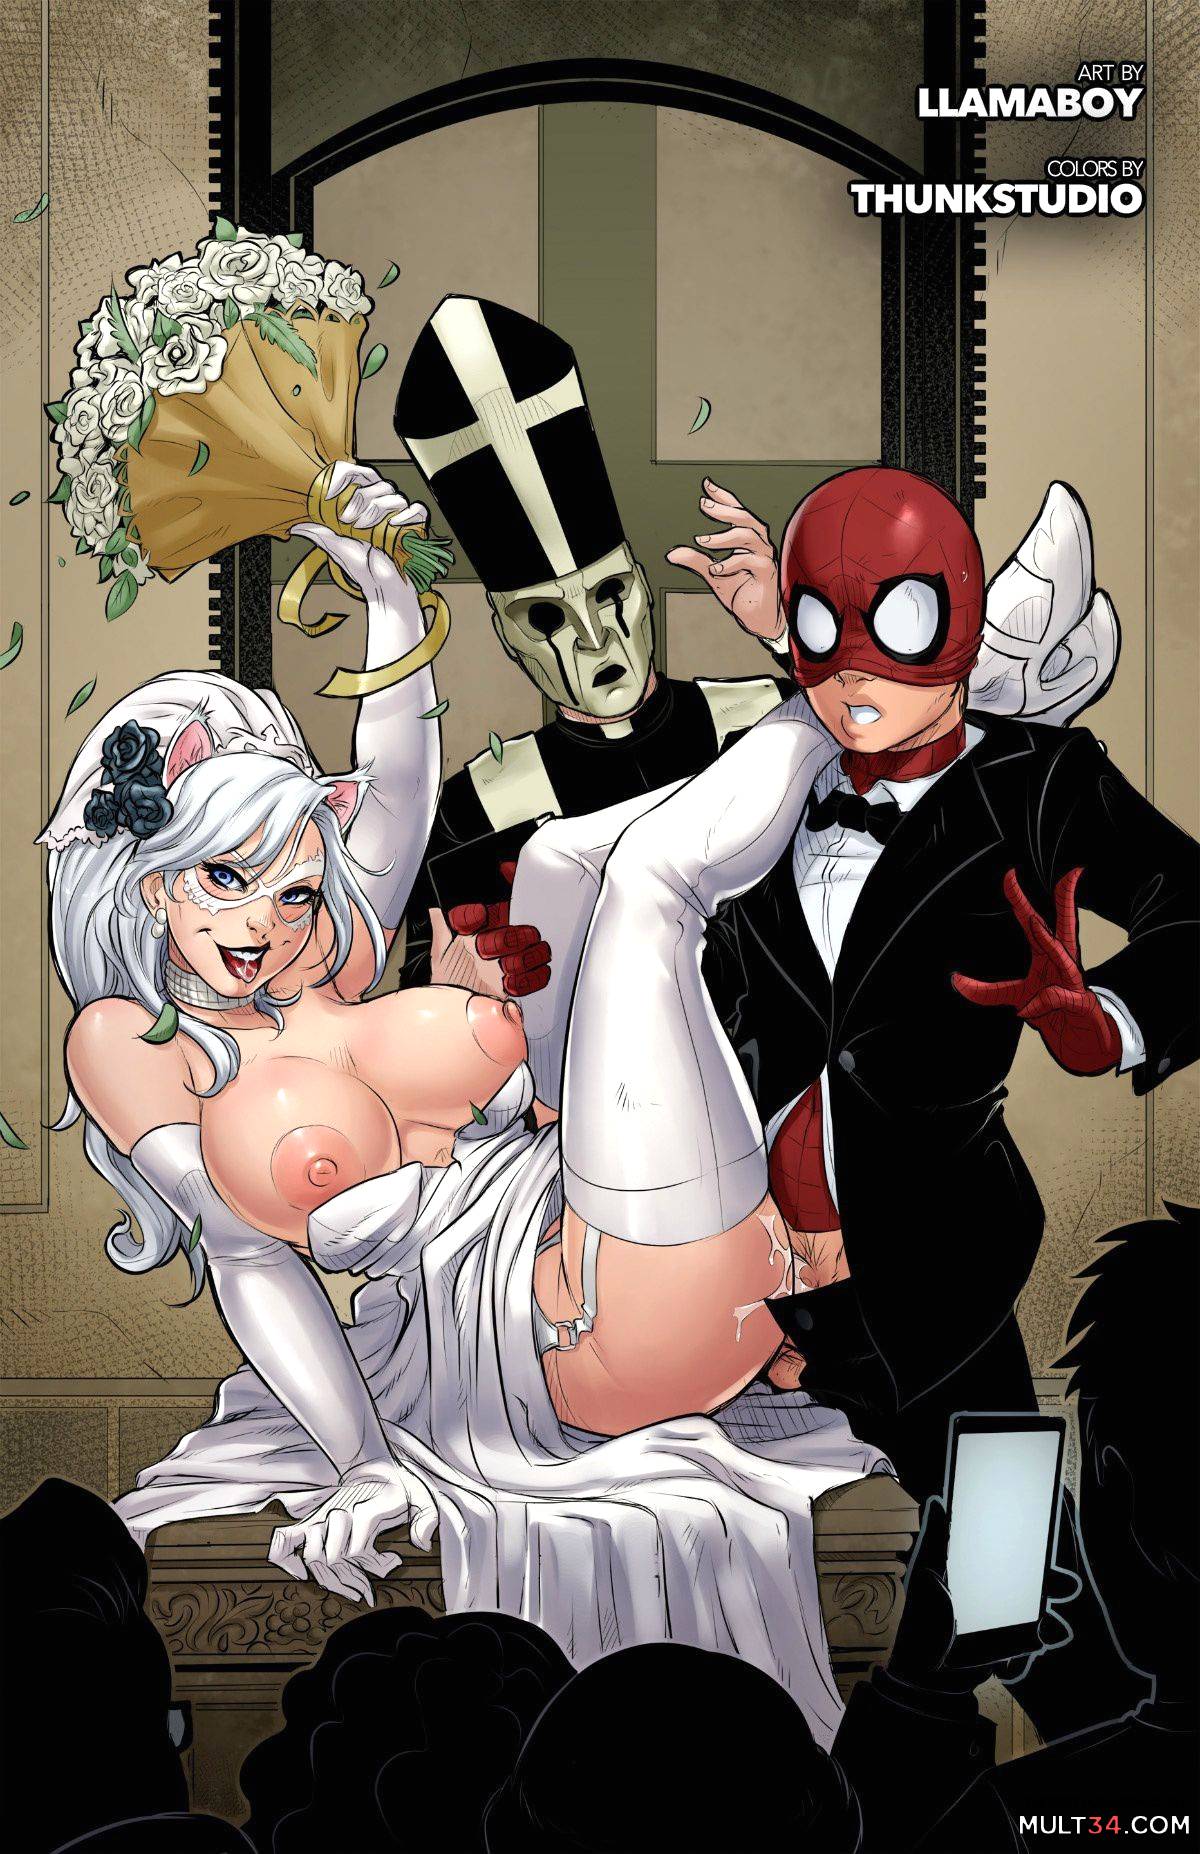 Spider Man Pron Rap Hd - The Nuptials of Spider-Man & Black Cat porn comic - the best cartoon porn  comics, Rule 34 | MULT34